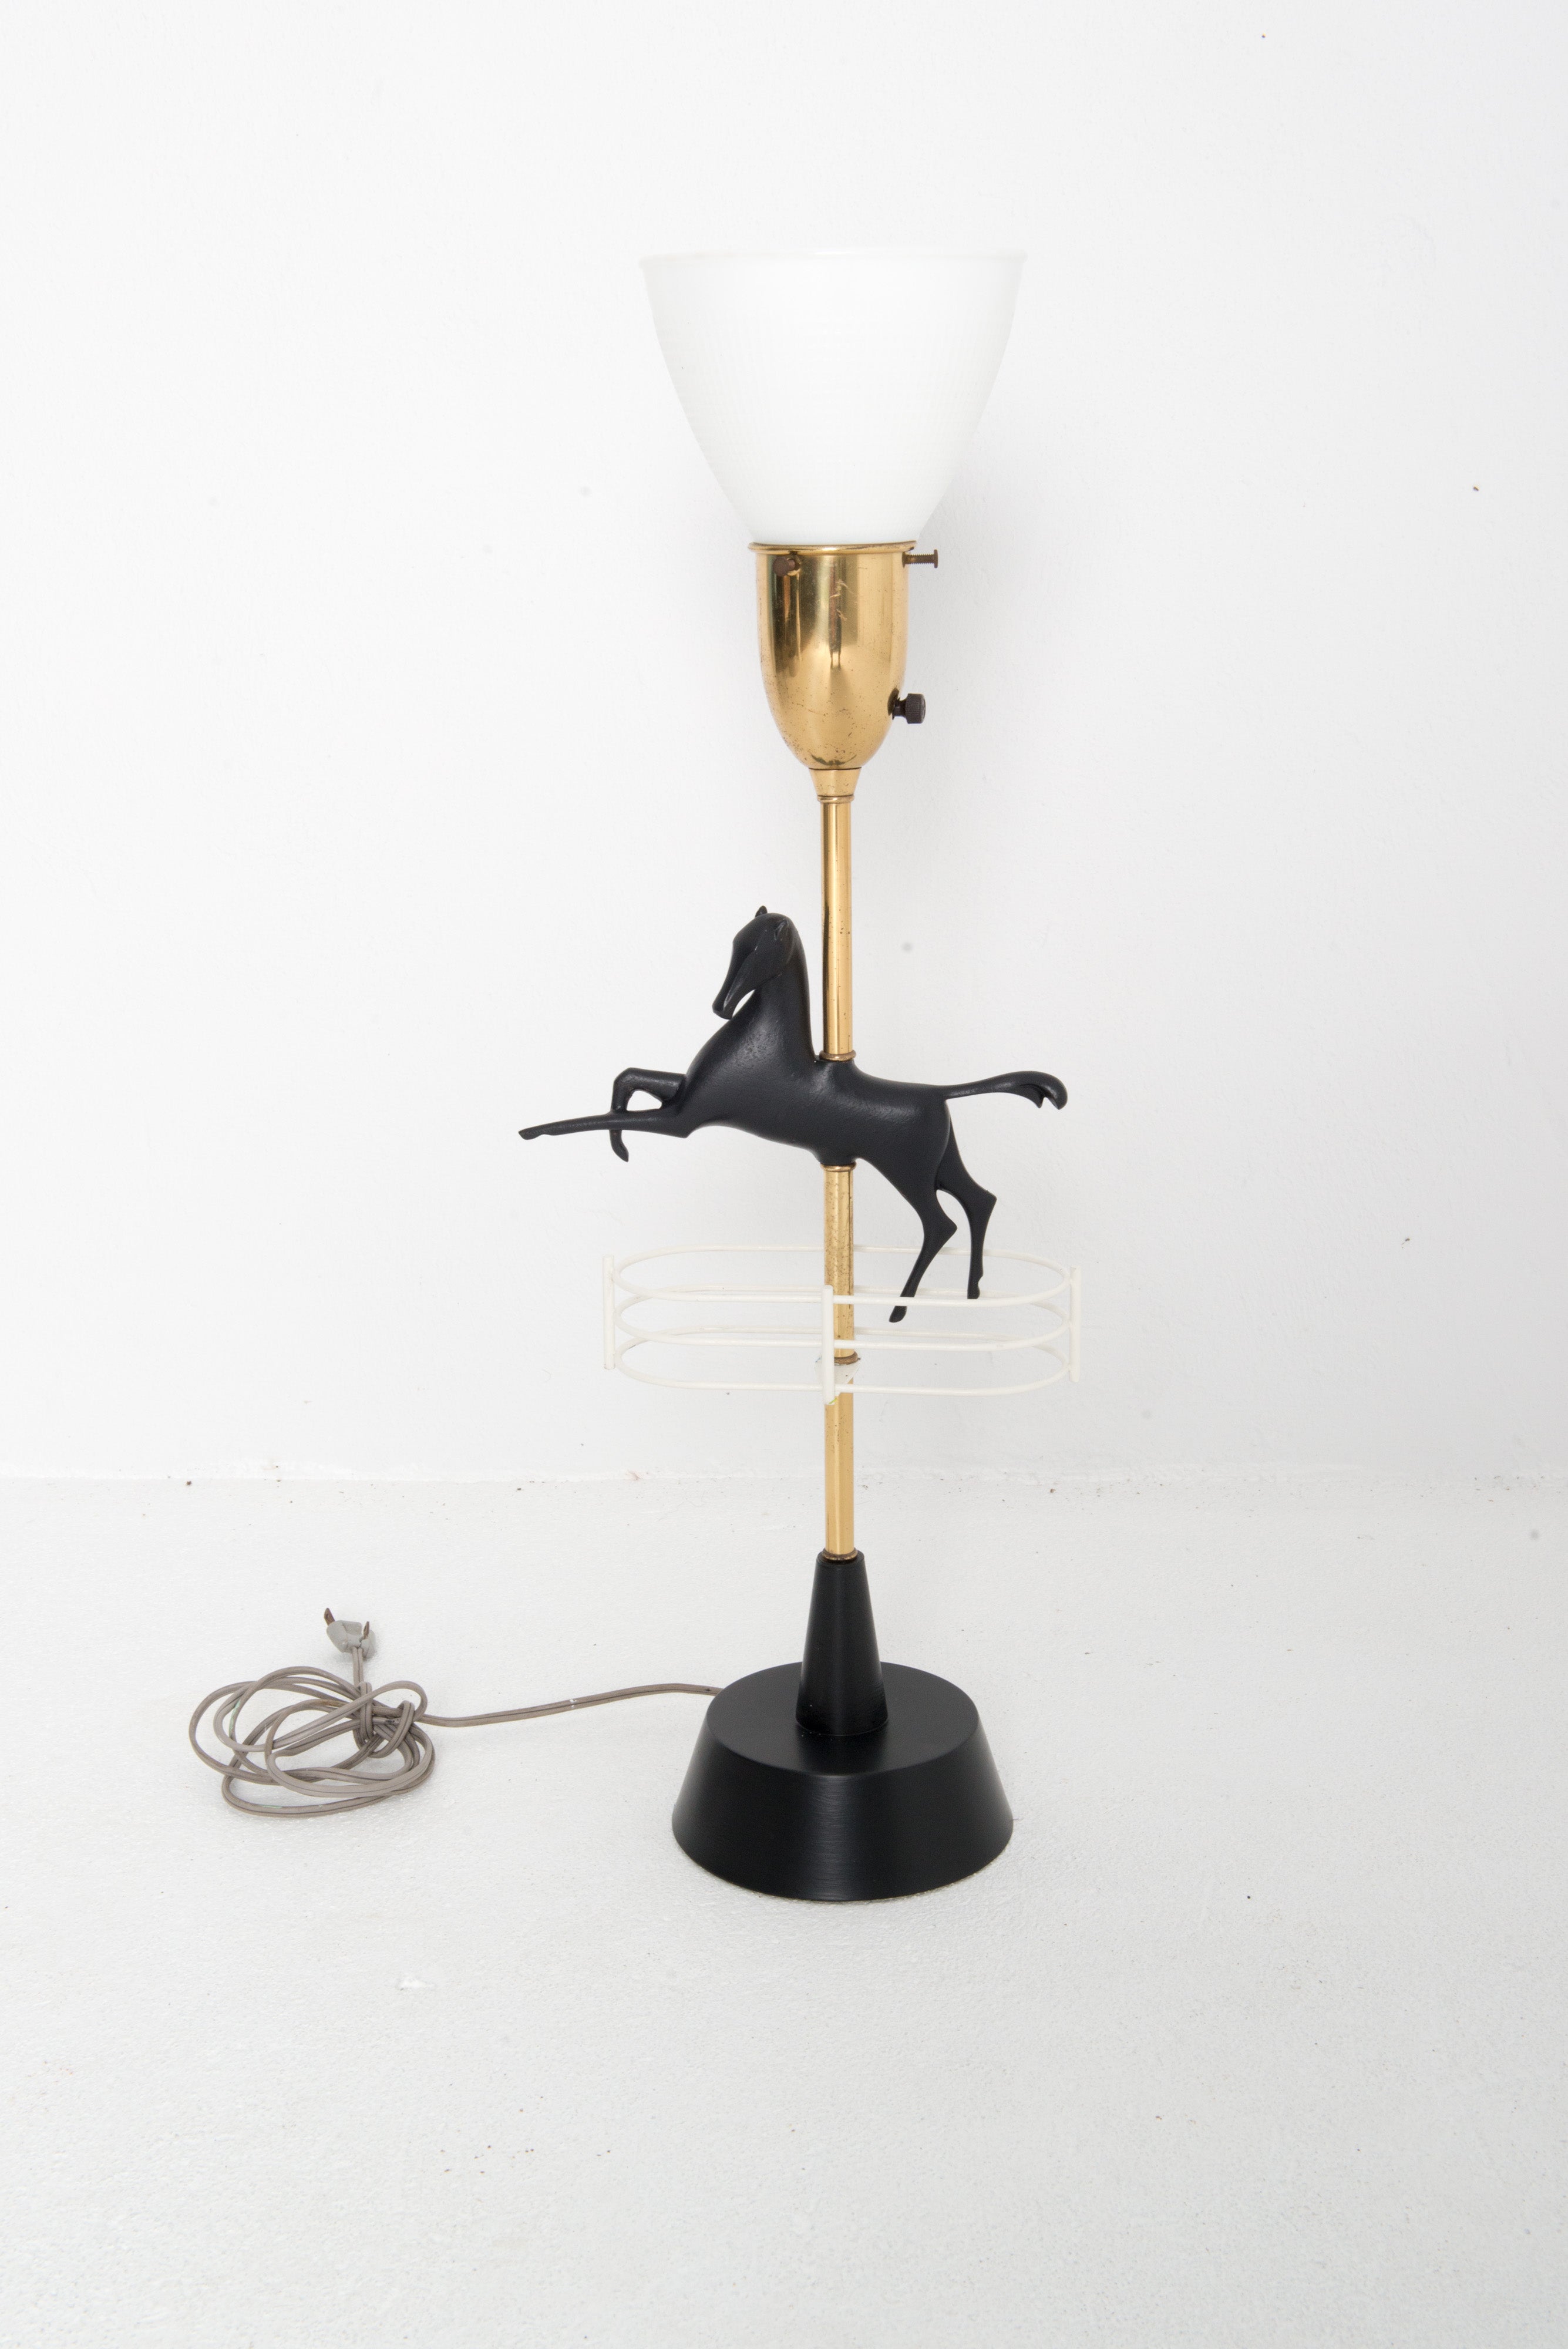 Lampe de table en laiton et métal peint, de style moderne du milieu du siècle, représentant un cheval bondissant. L'abat-jour cylindrique bas et le diffuseur en verre sont des éléments originaux de la lampe. L'abat-jour a un diamètre de 19